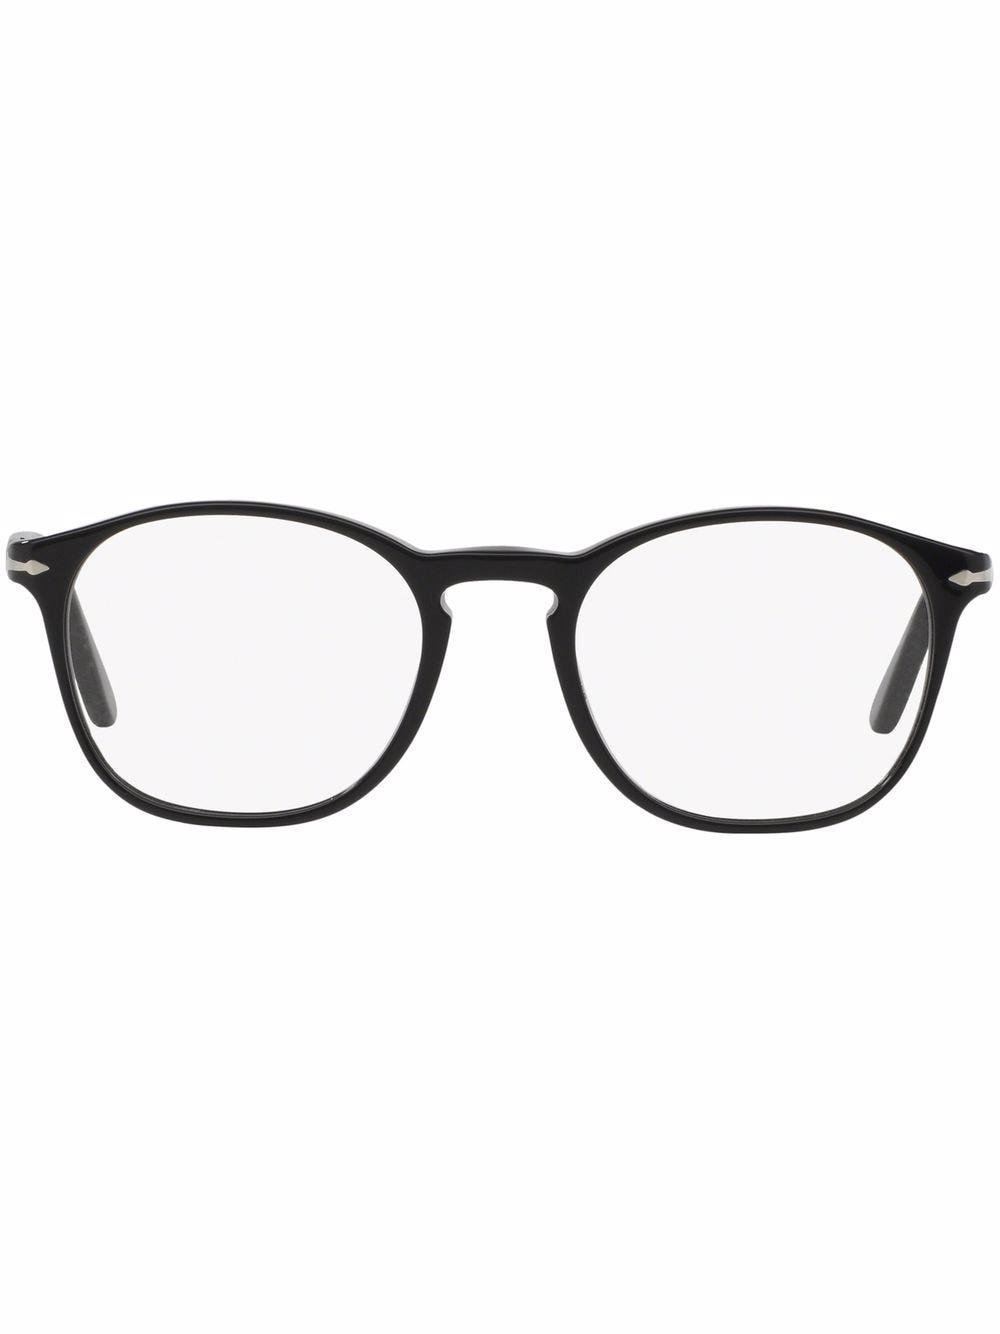 Persol Brille mit eckigem Gestell - Schwarz von Persol